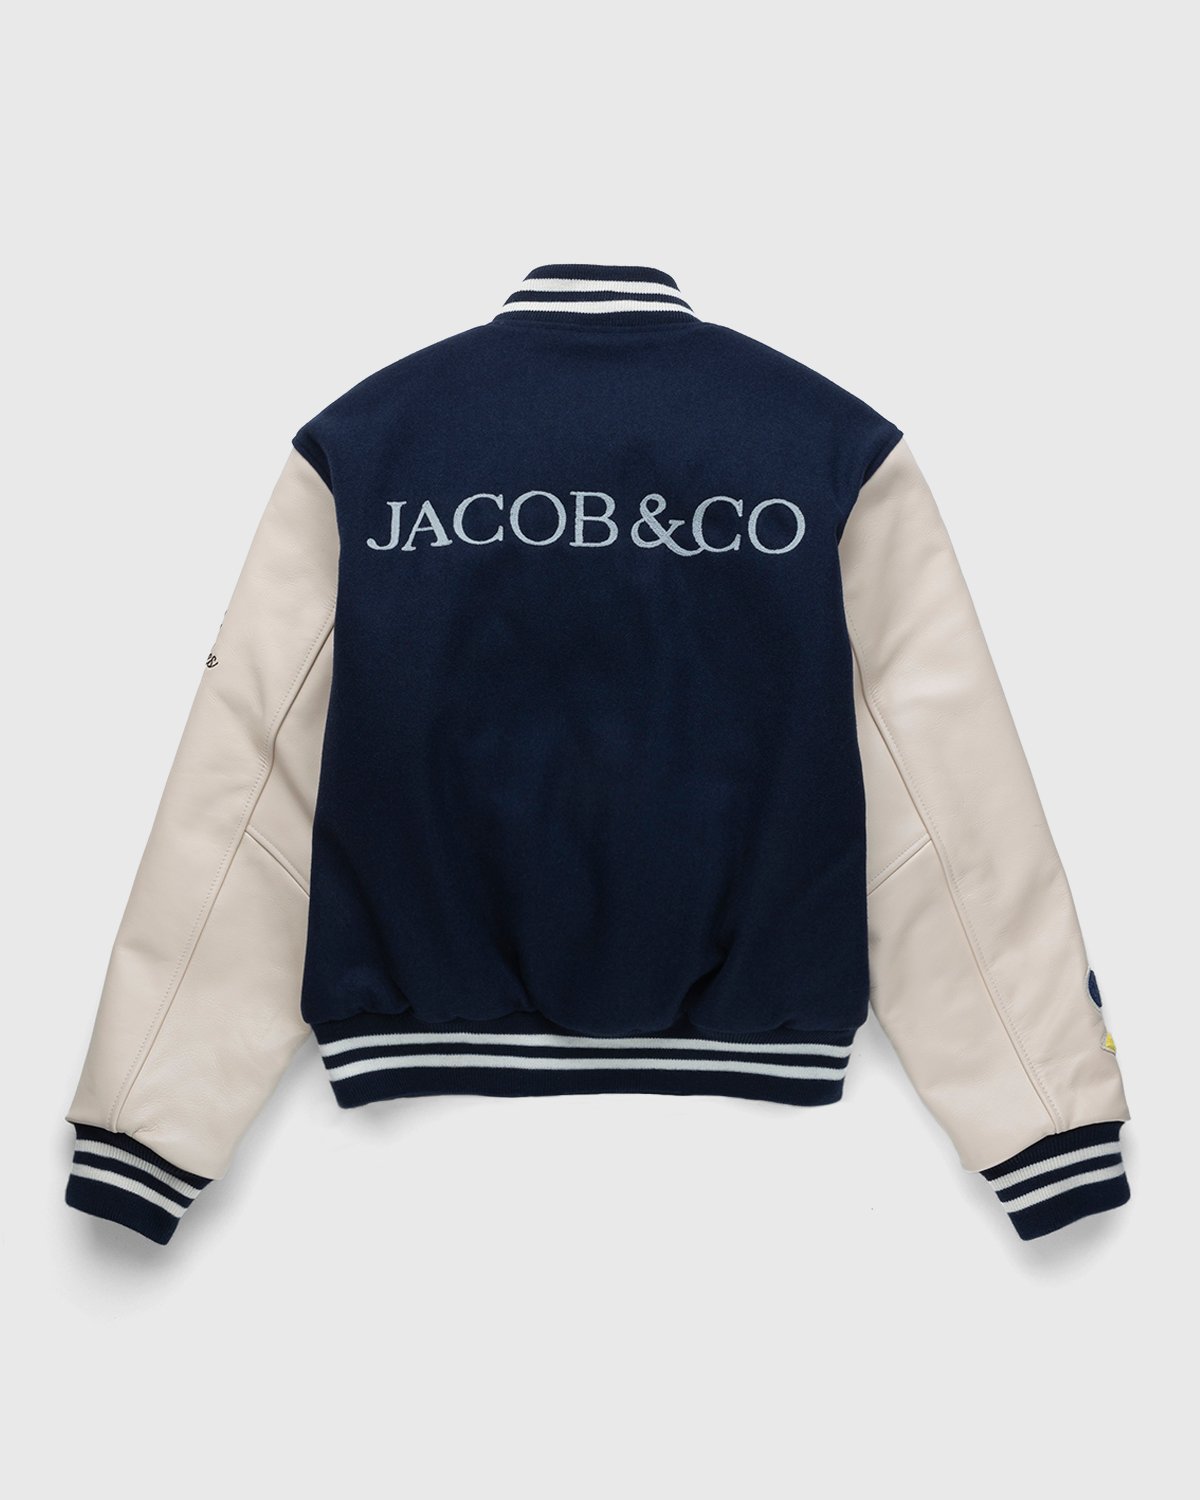 Jacob & Co. x Highsnobiety - Logo Varsity Jacket Navy Creme - Clothing - Blue - Image 2